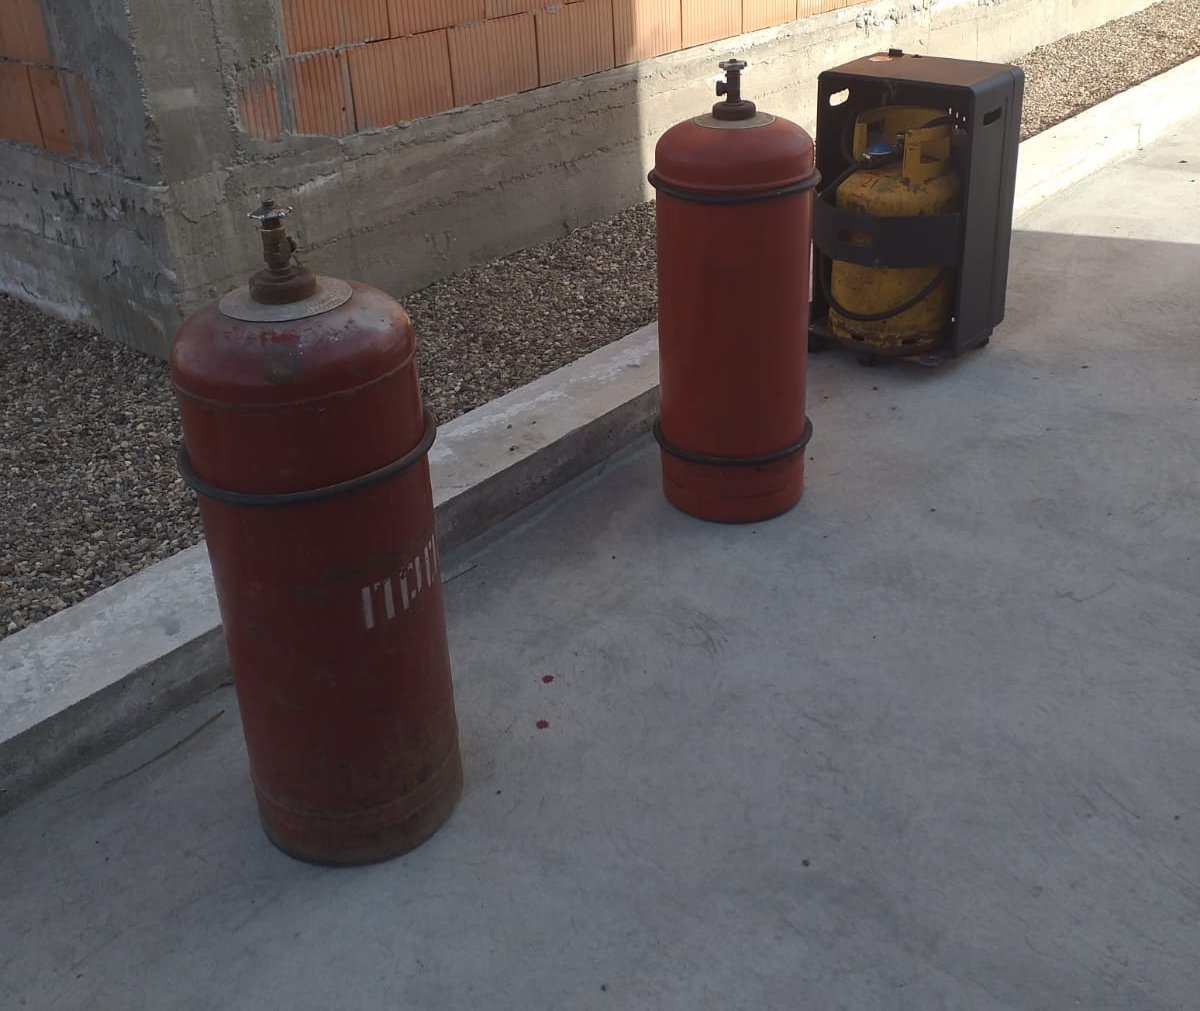 Explozie datorată acumulării de gaz, dar fără incendiu, în orașul Pâncota 